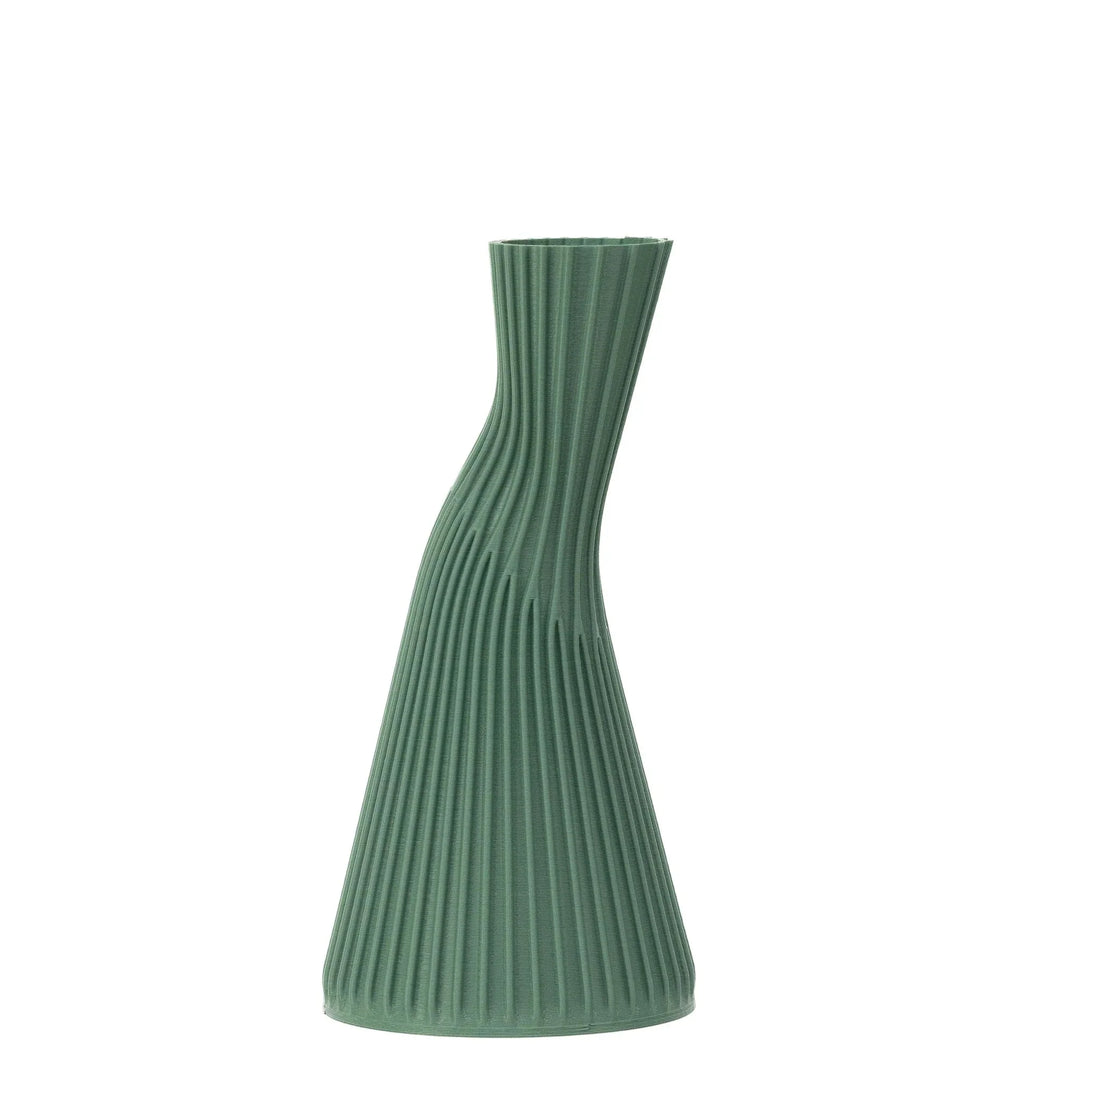 Conan vase by Cyrc design